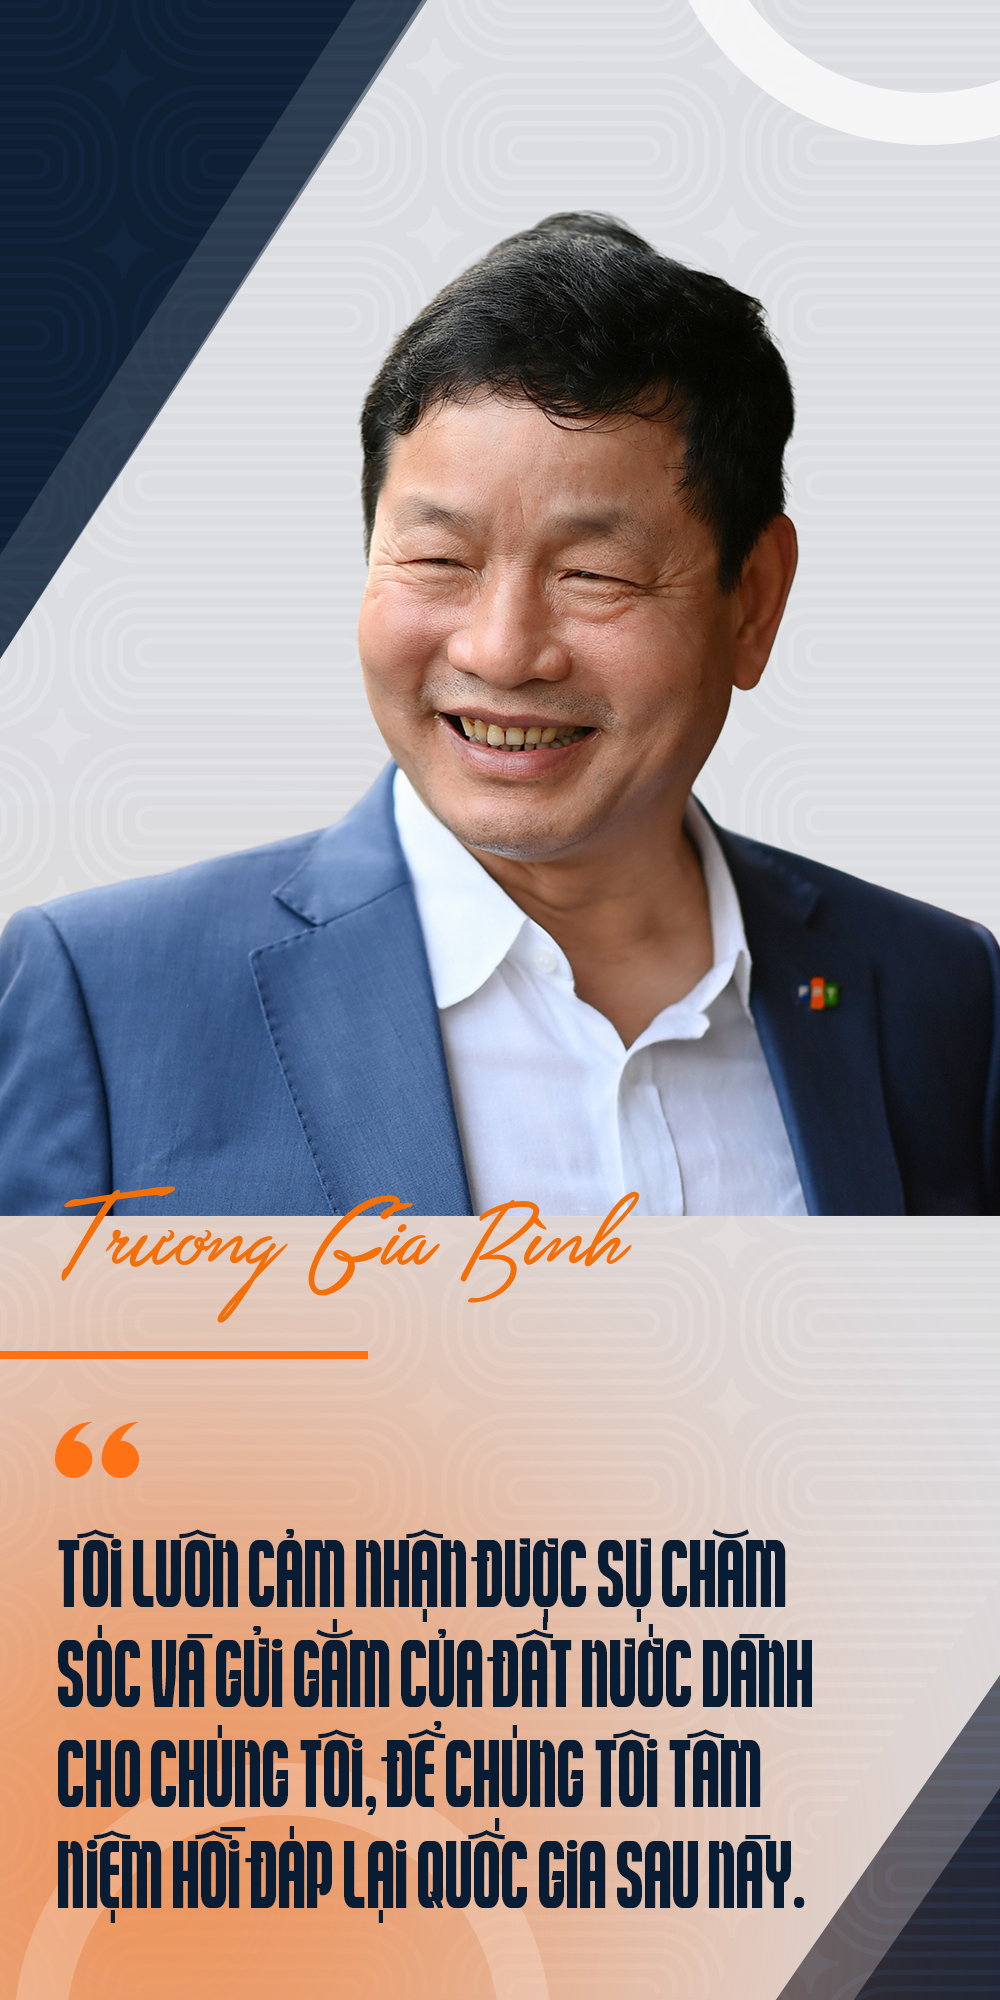 Chủ tịch FPT Trương Gia Bình: 33 năm xây dựng đế chế 4 tỷ USD từ 6 cây vàng - 26